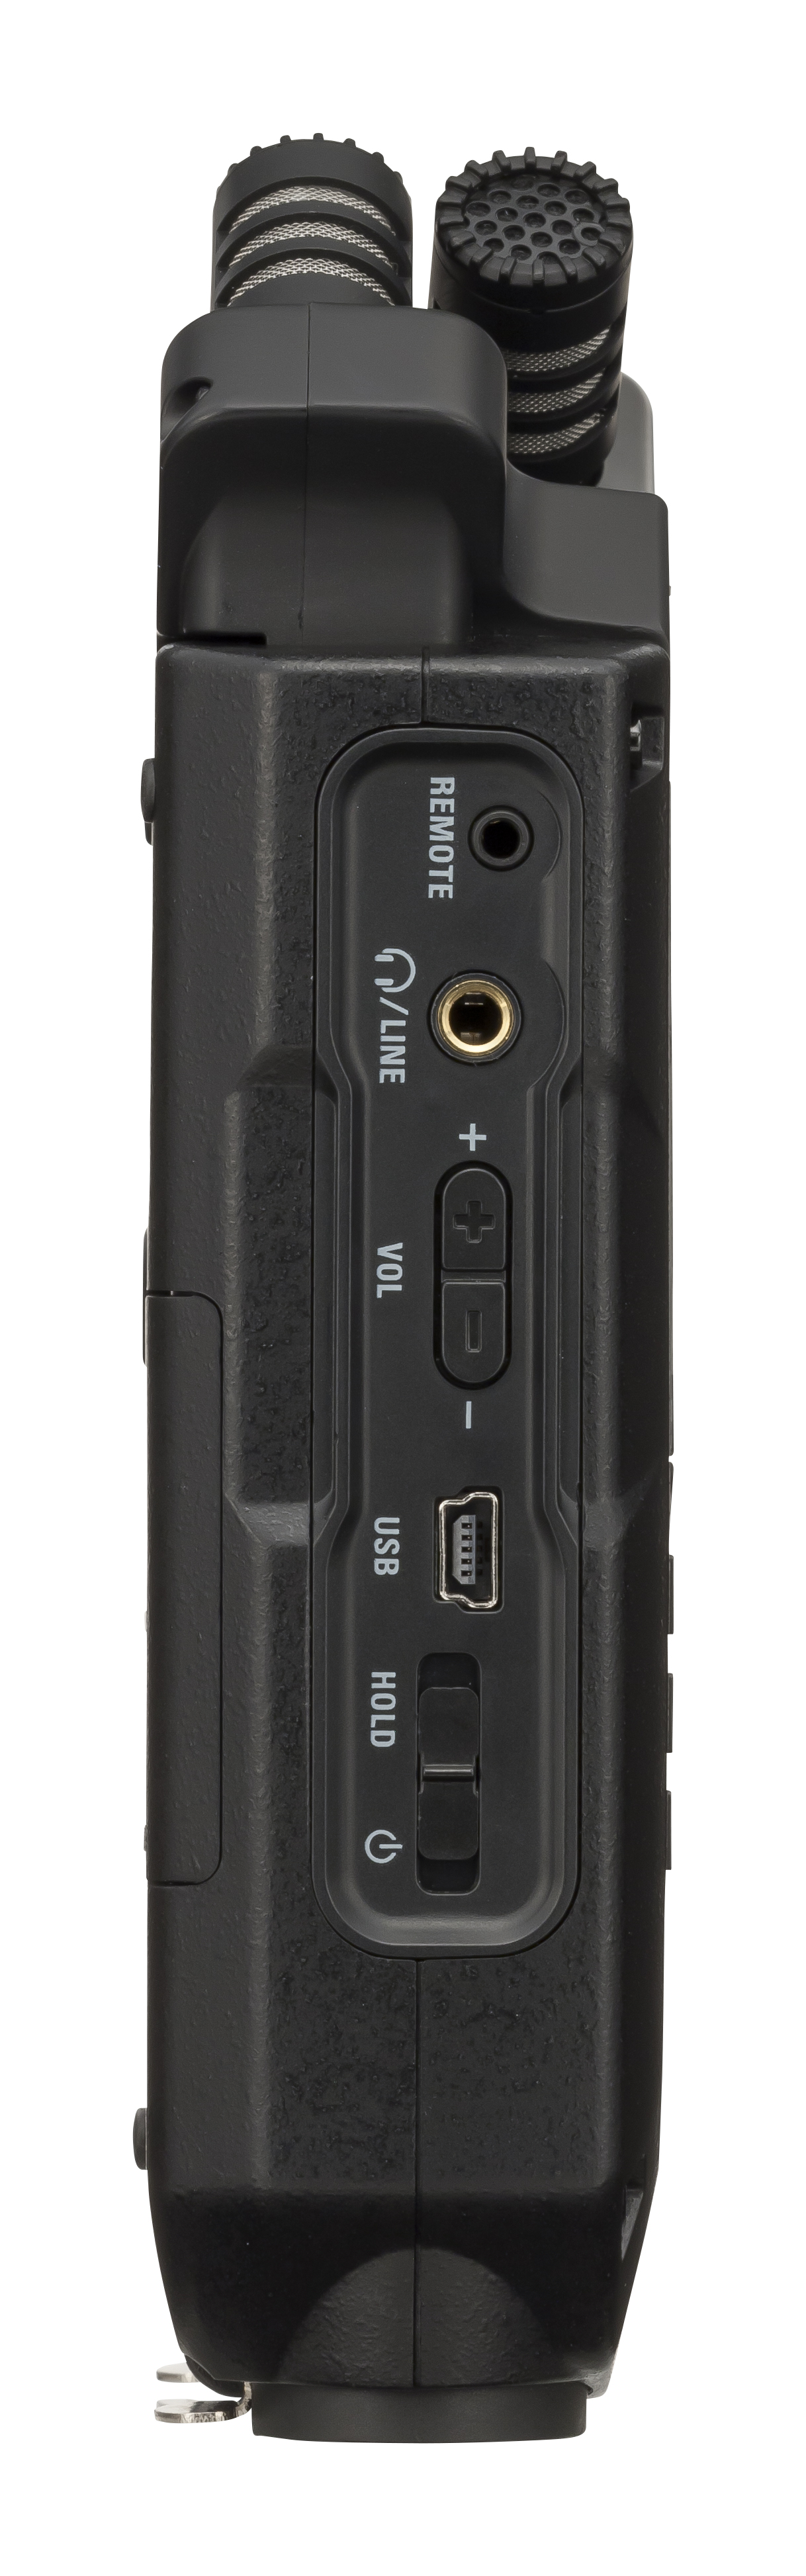 Zoom H4n Pro Black + Pack Accessoires - Mobiele opnemer - Variation 2